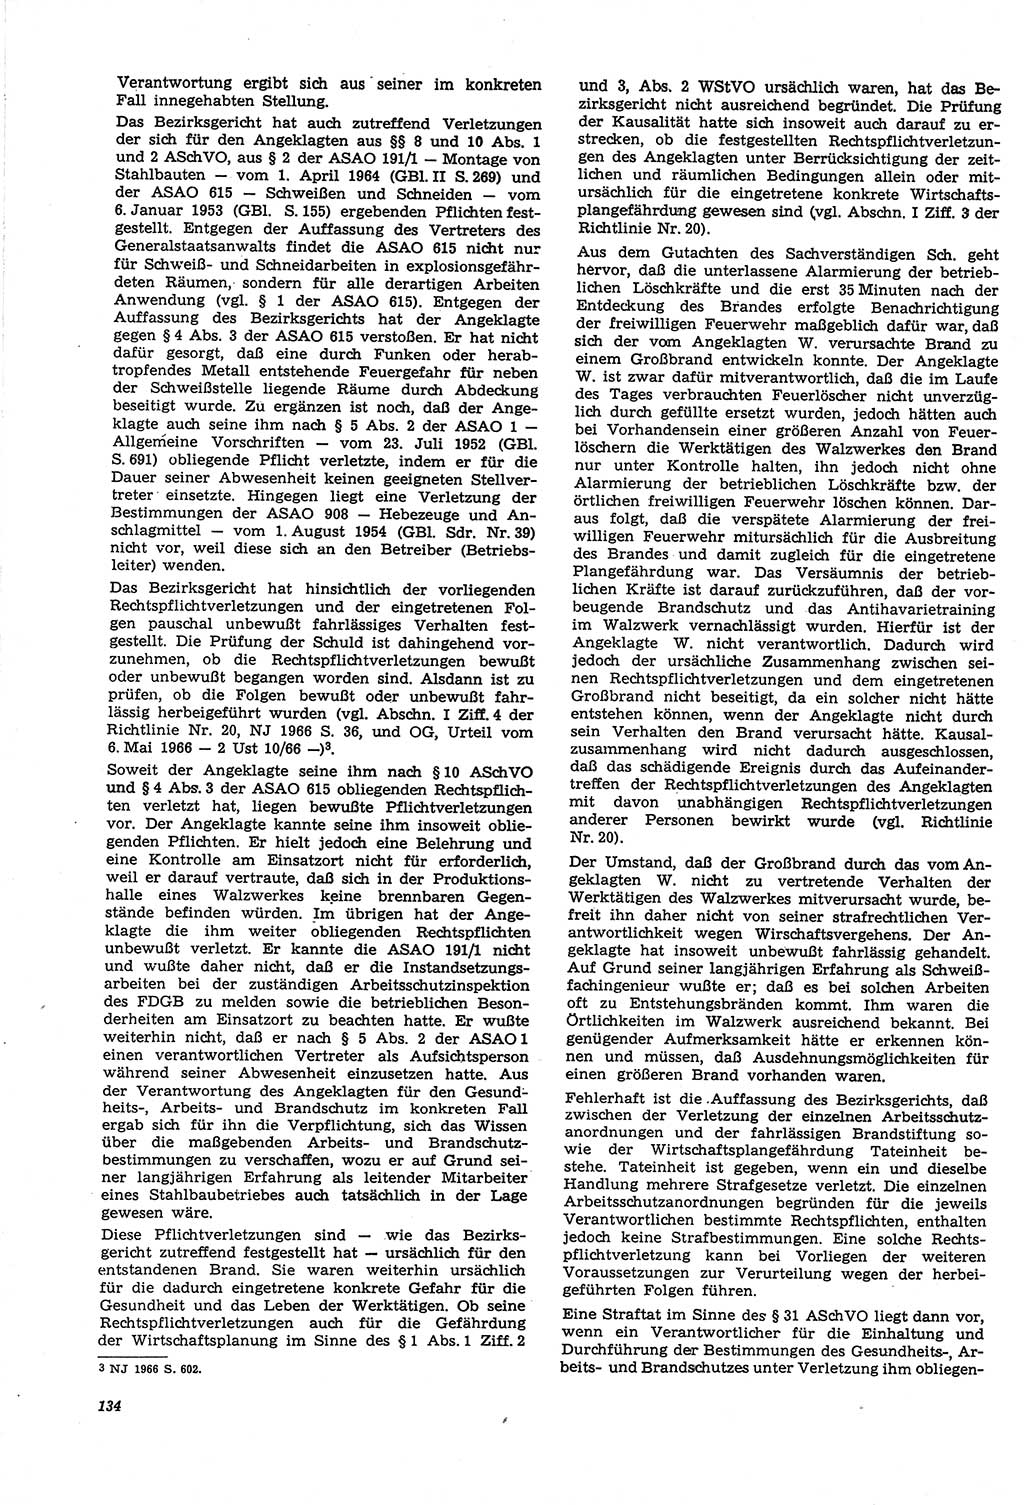 Neue Justiz (NJ), Zeitschrift für Recht und Rechtswissenschaft [Deutsche Demokratische Republik (DDR)], 21. Jahrgang 1967, Seite 134 (NJ DDR 1967, S. 134)